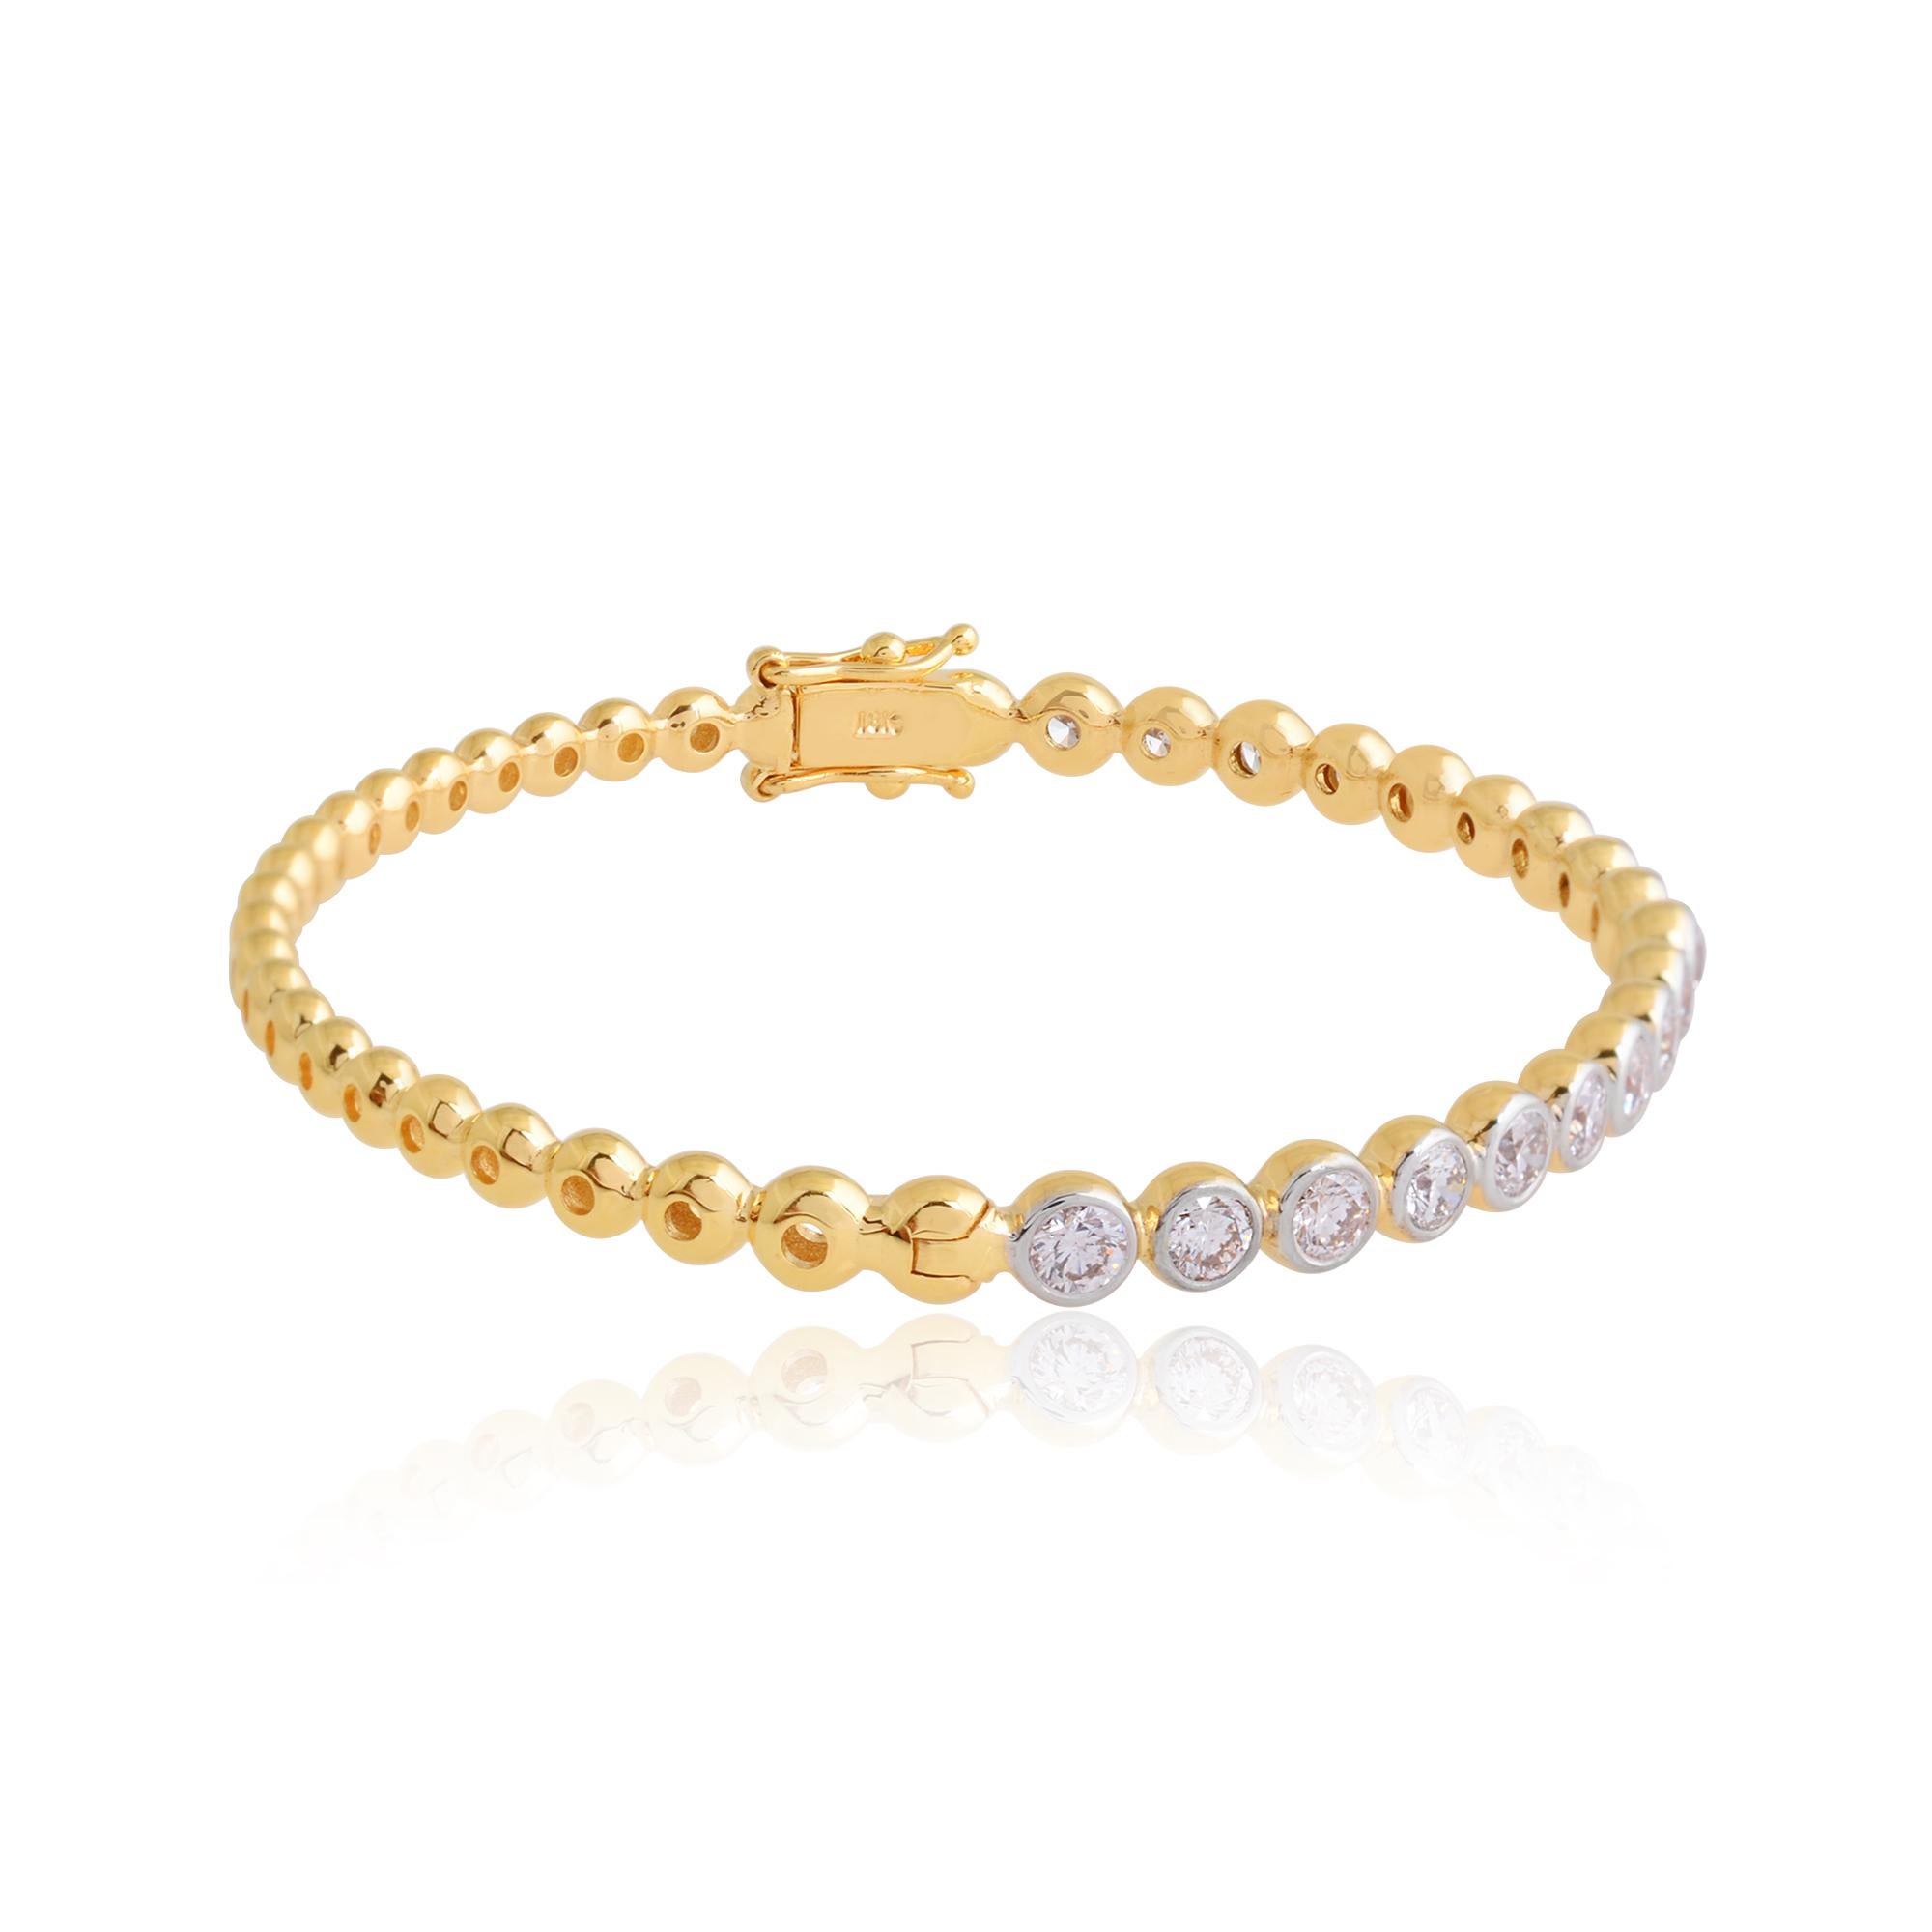 Le bracelet lui-même est réalisé avec expertise en or jaune 14k massif, réputé pour sa teinte chaude et riche. La finition lustrée de l'or rehausse l'allure générale de la pièce, ajoutant une touche de luxe à son design.

Code de l'article :-